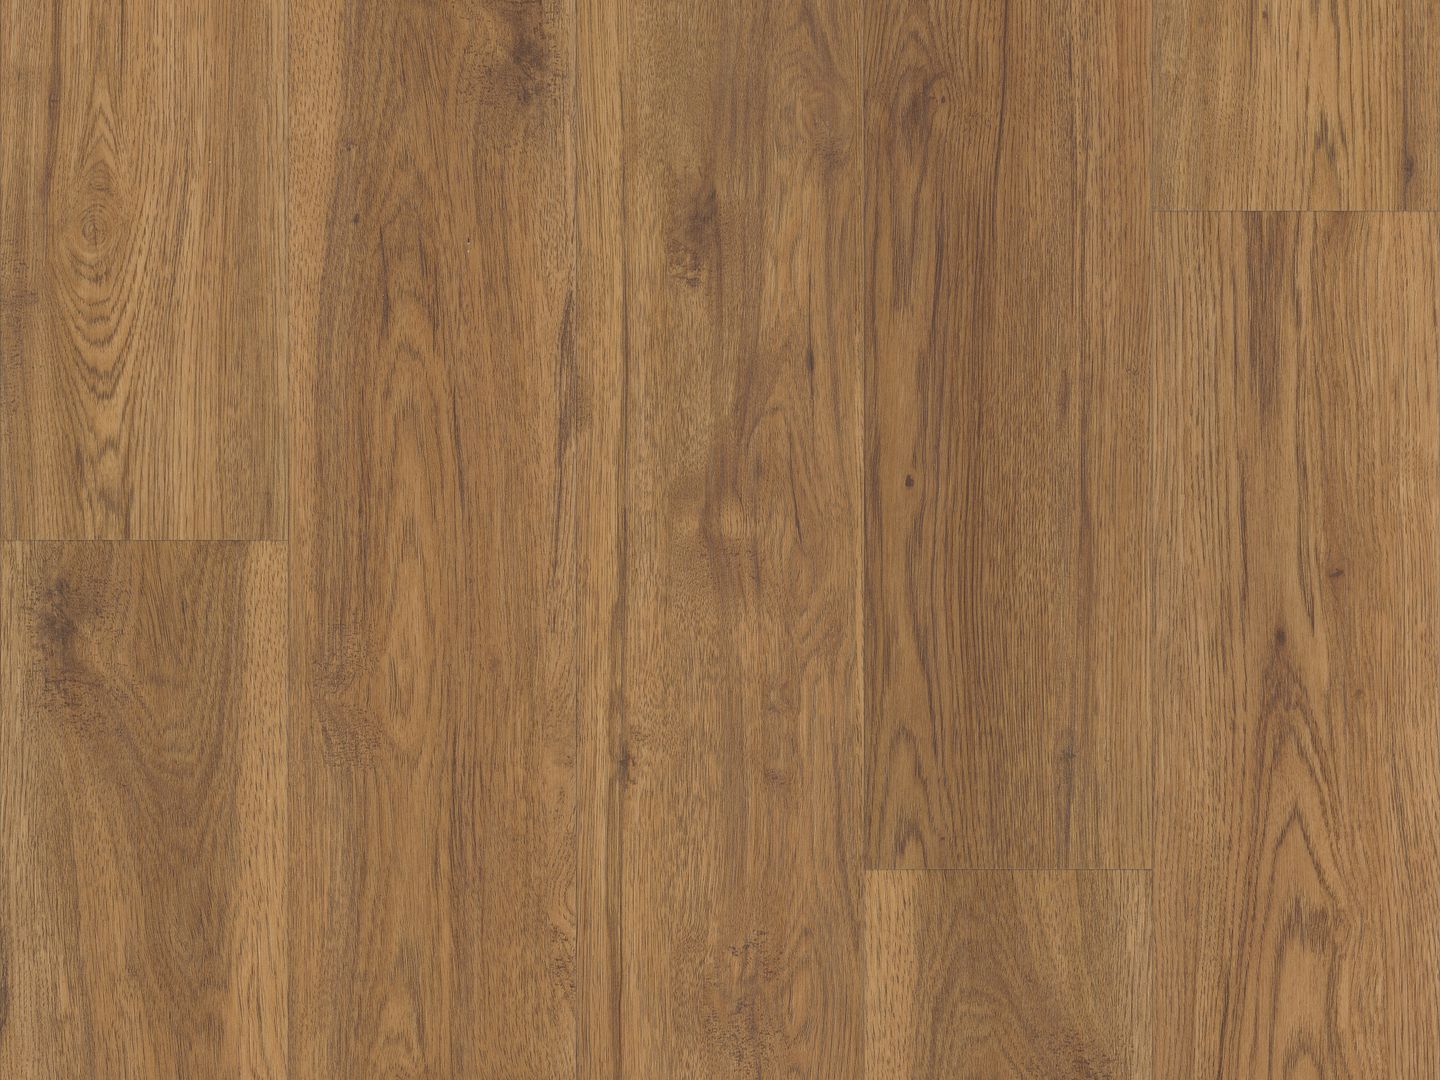 COREtec Classics marsh oak vv024-00714 Vinyl Plank Flooring | COREtec